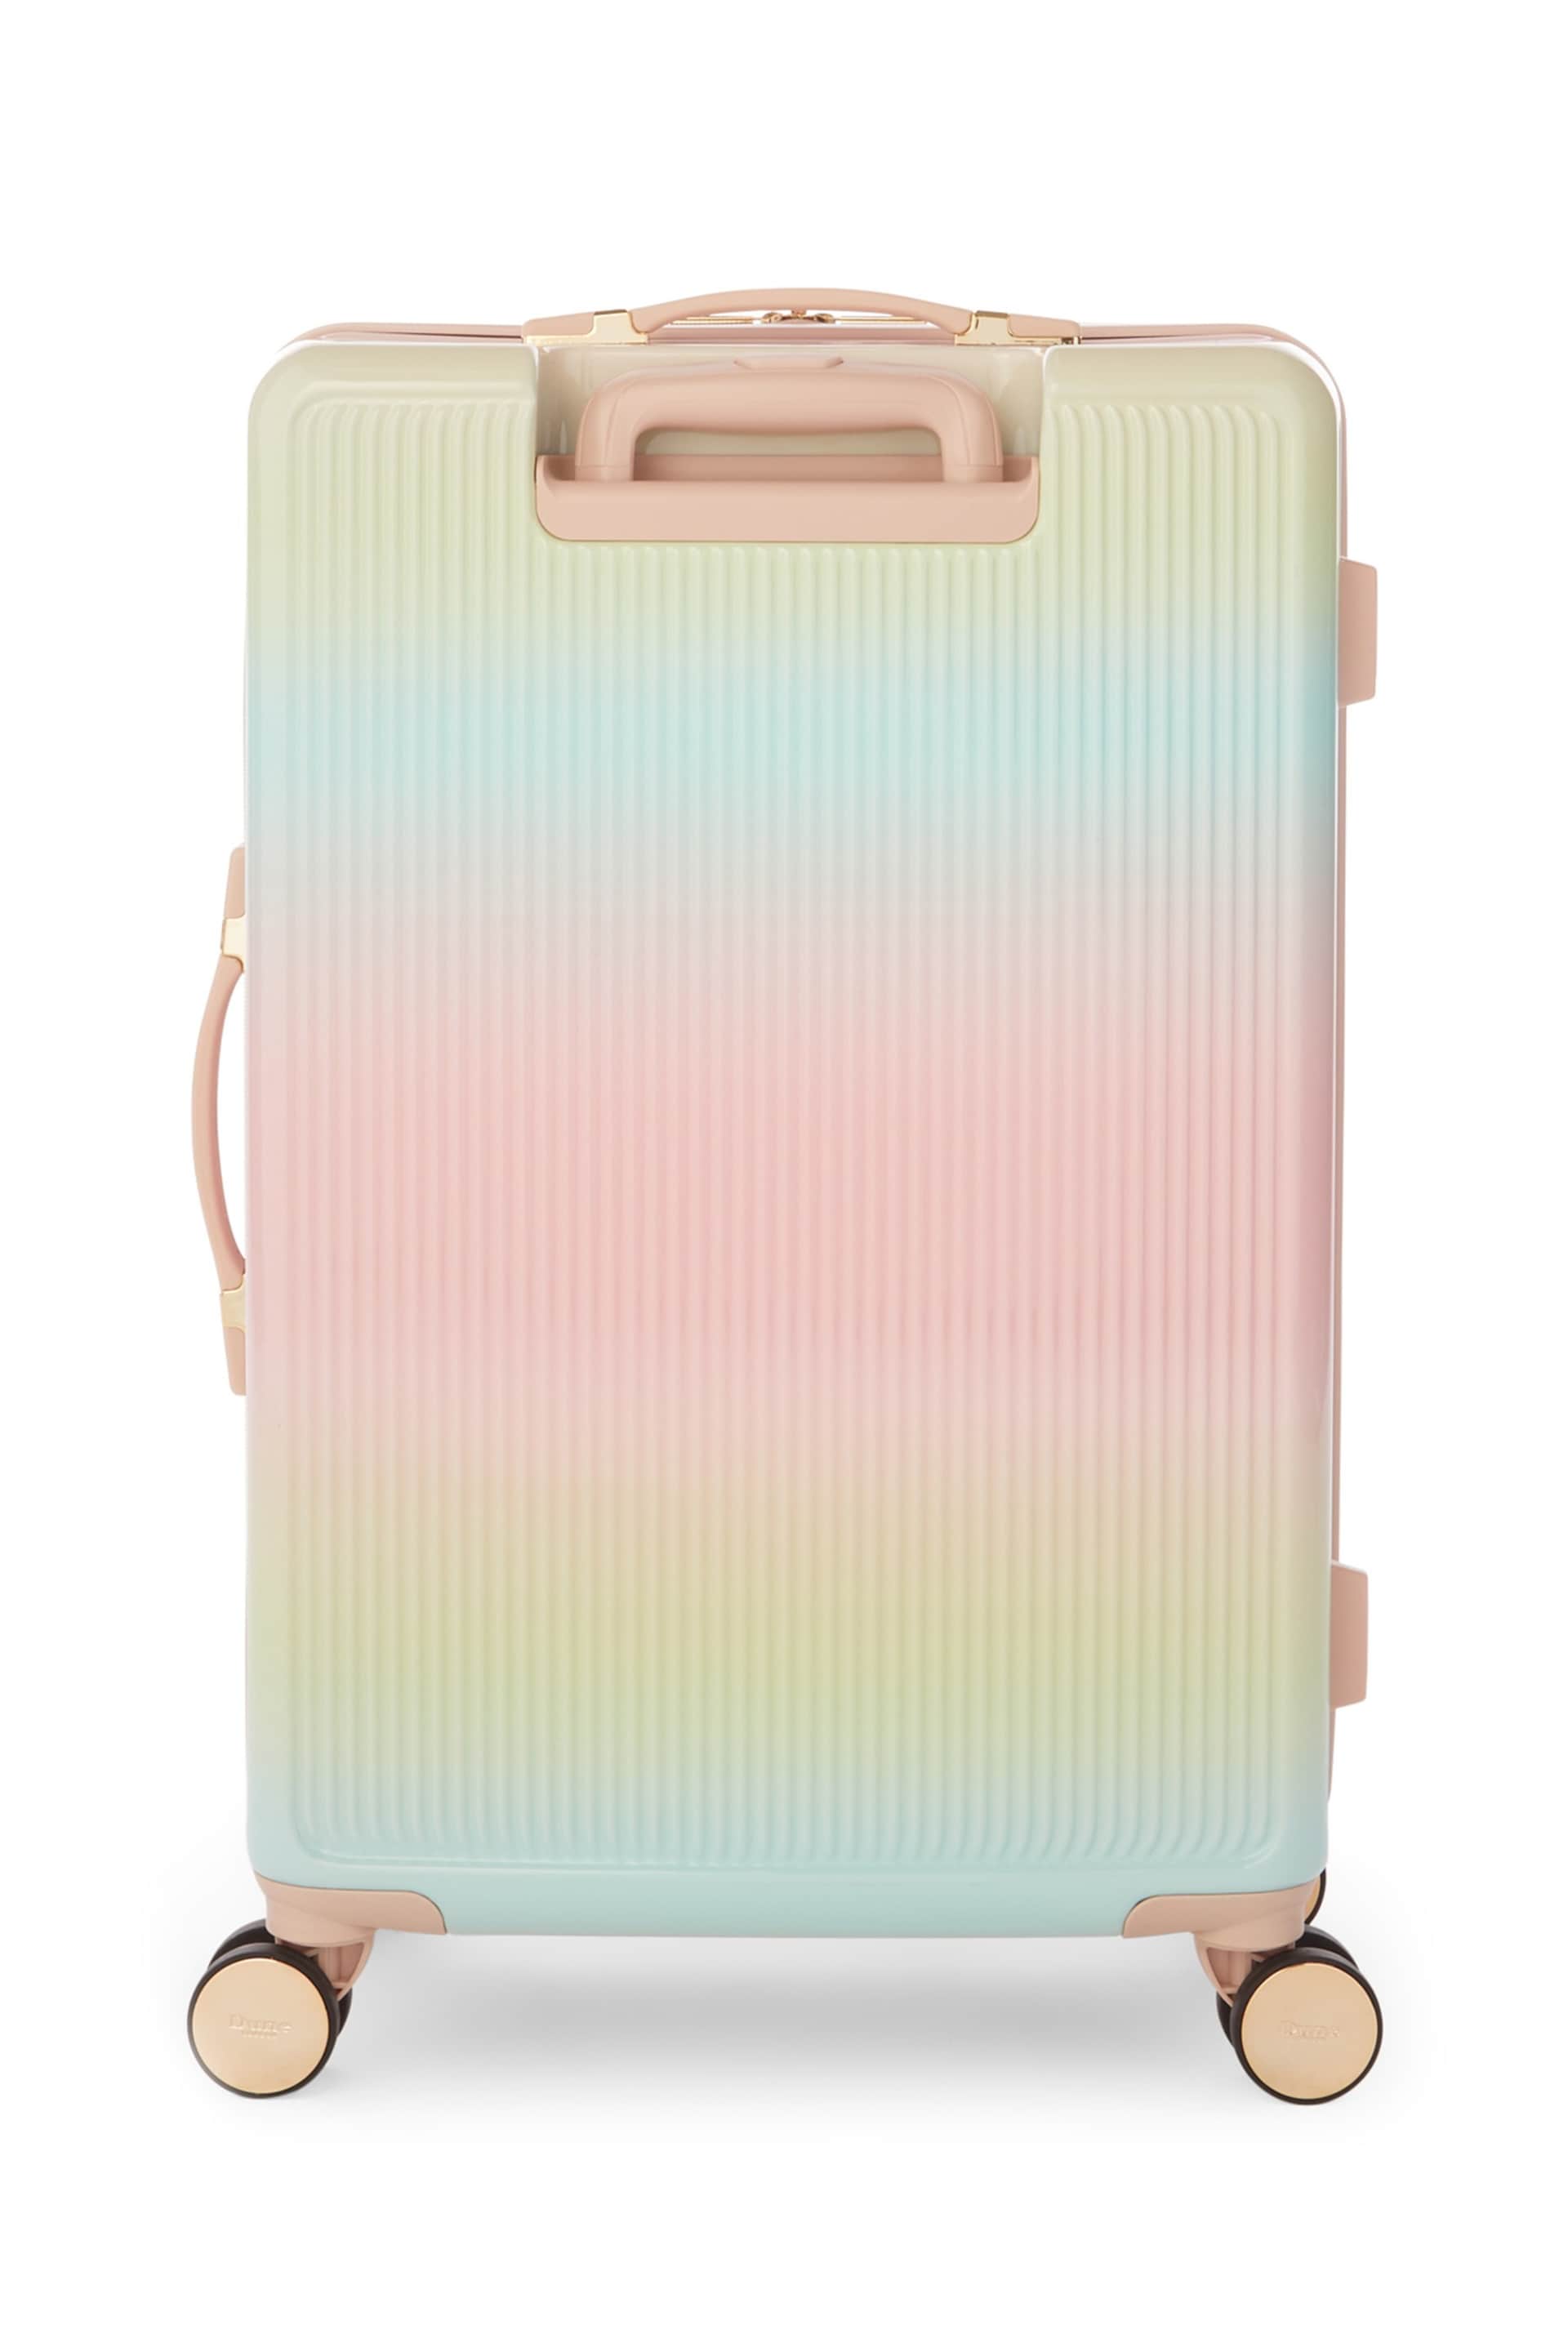 Dune London Pink Olive Medium Suitcase - Image 3 of 6